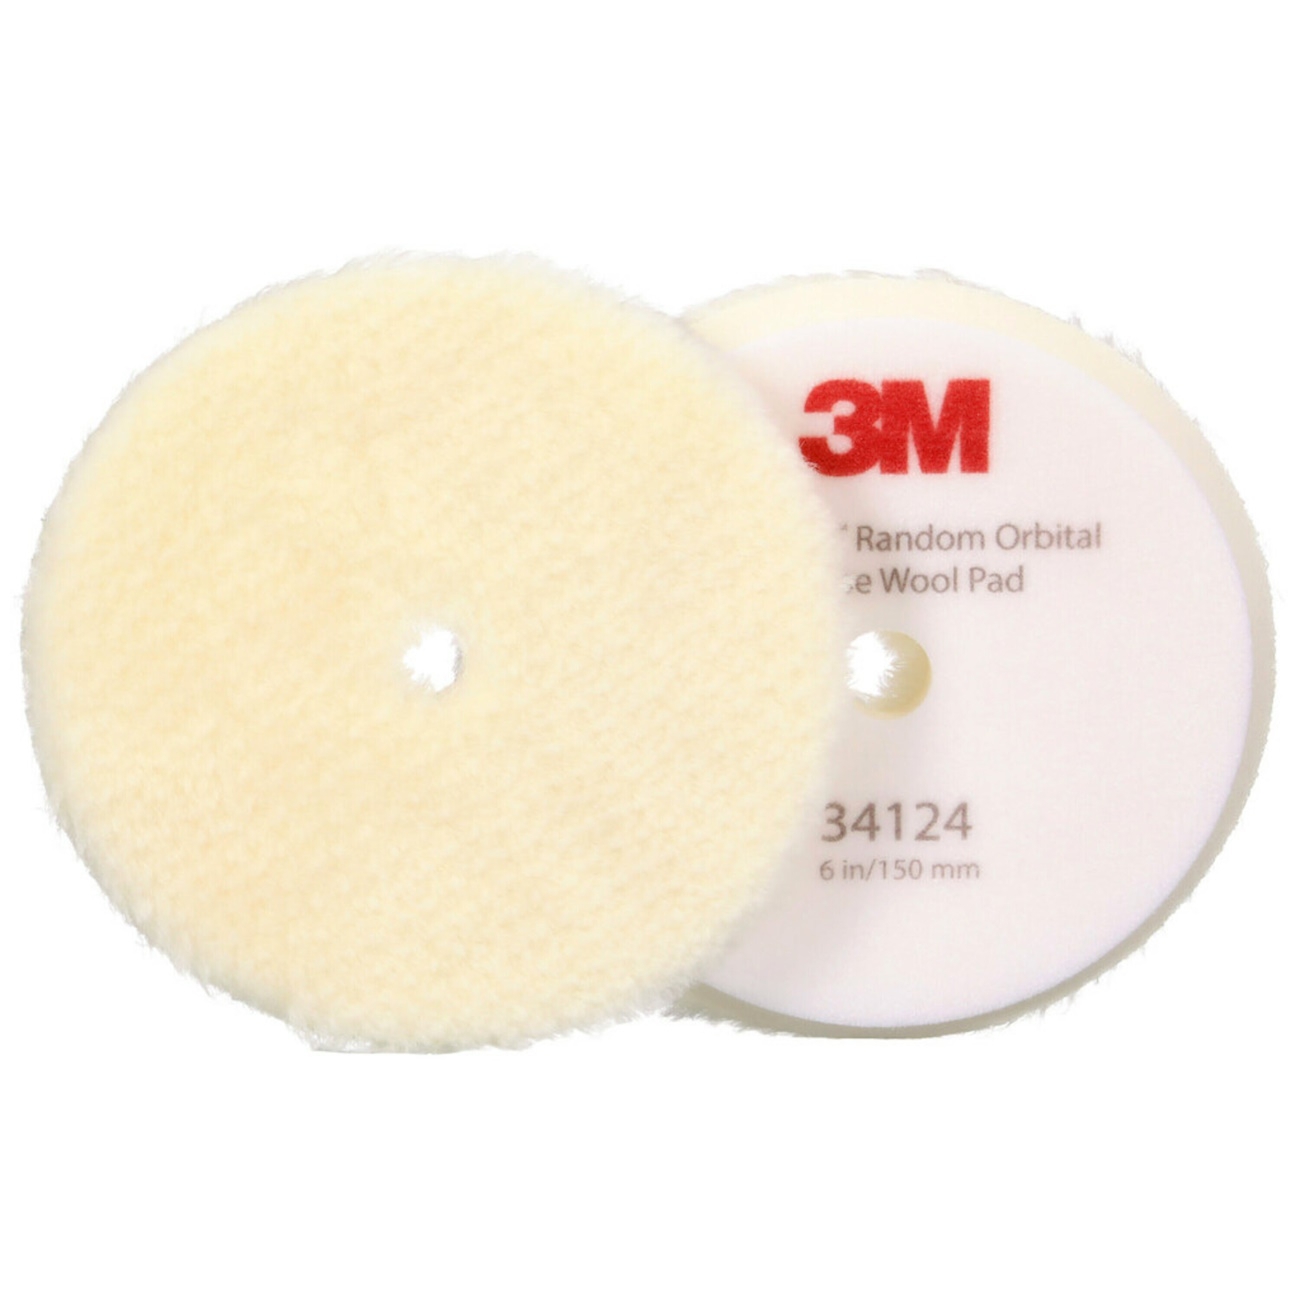 3M Perfect-it Polierpad mit Polierfell für Exzenterpoliermaschine, grob, weiß, 150 mm, 34124 (Pack = 2 Stück)